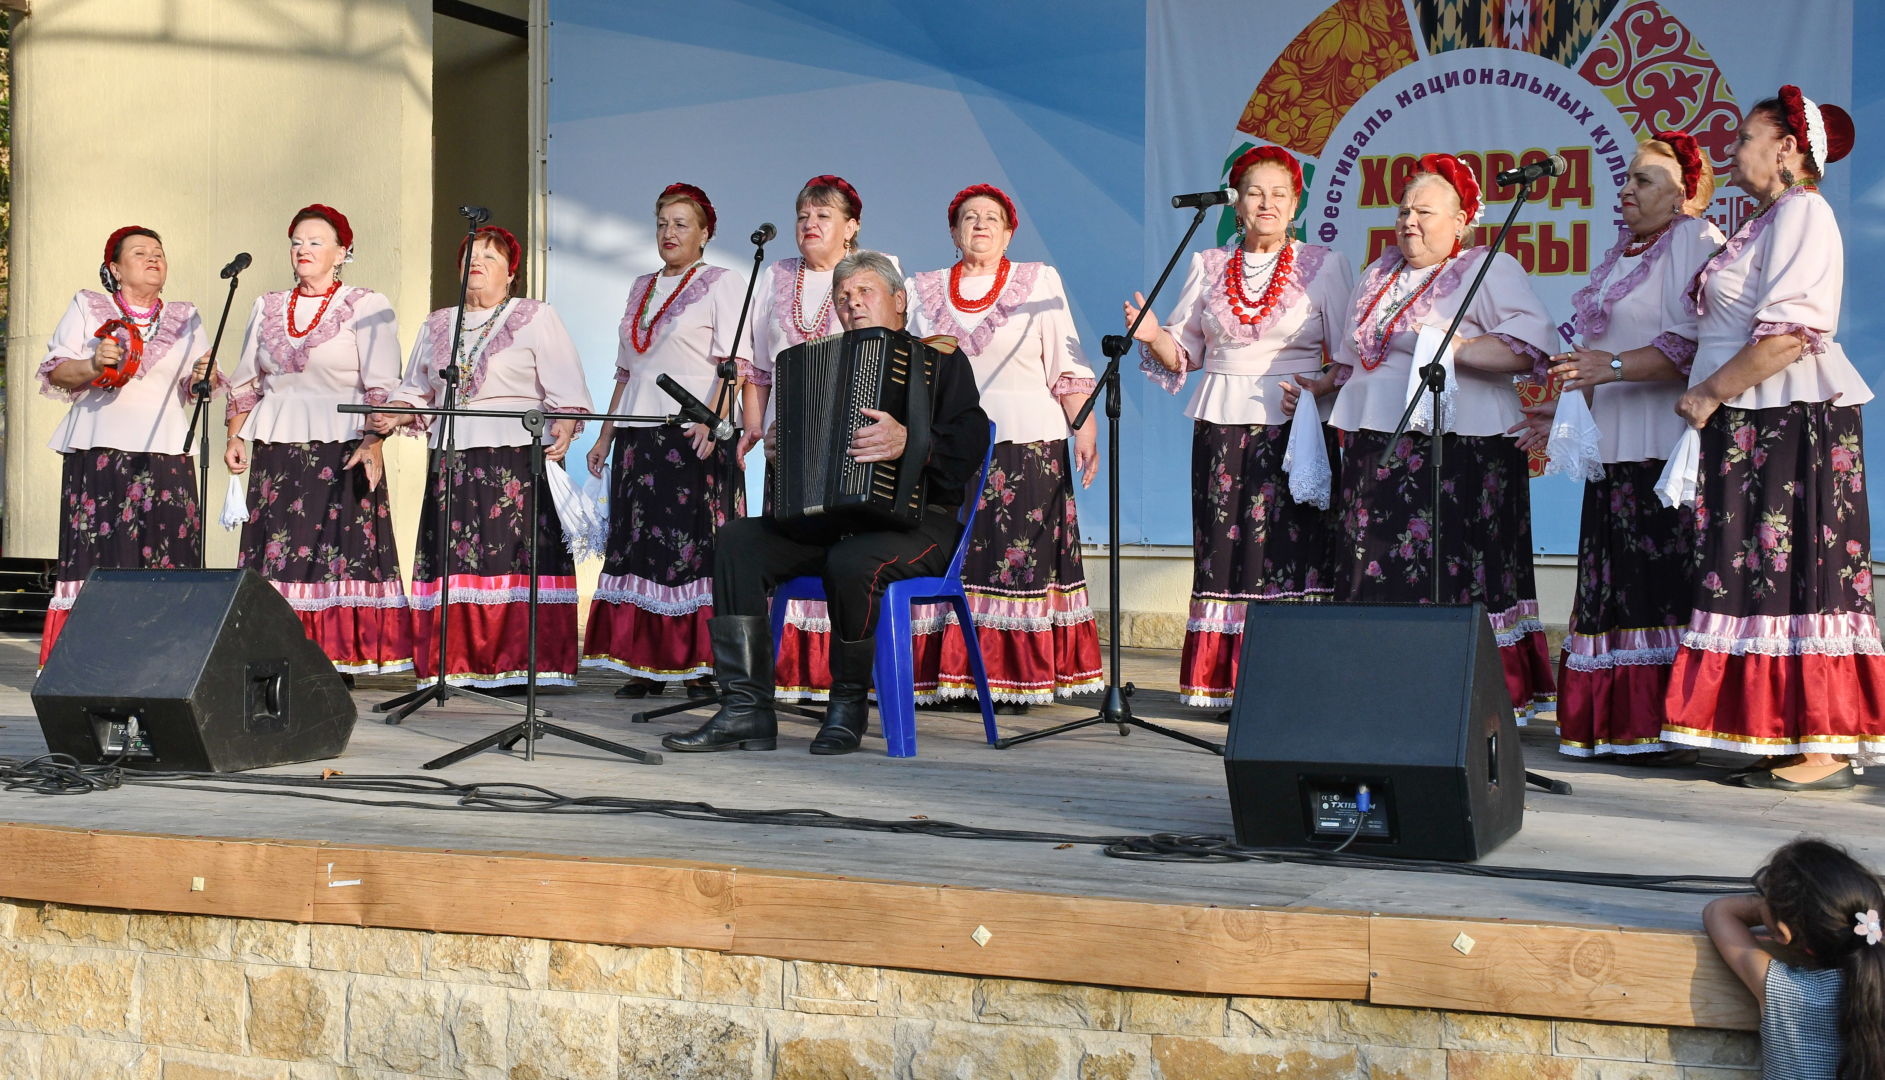 Национальные культурные традиции объединились в белореченском хороводе дружбы